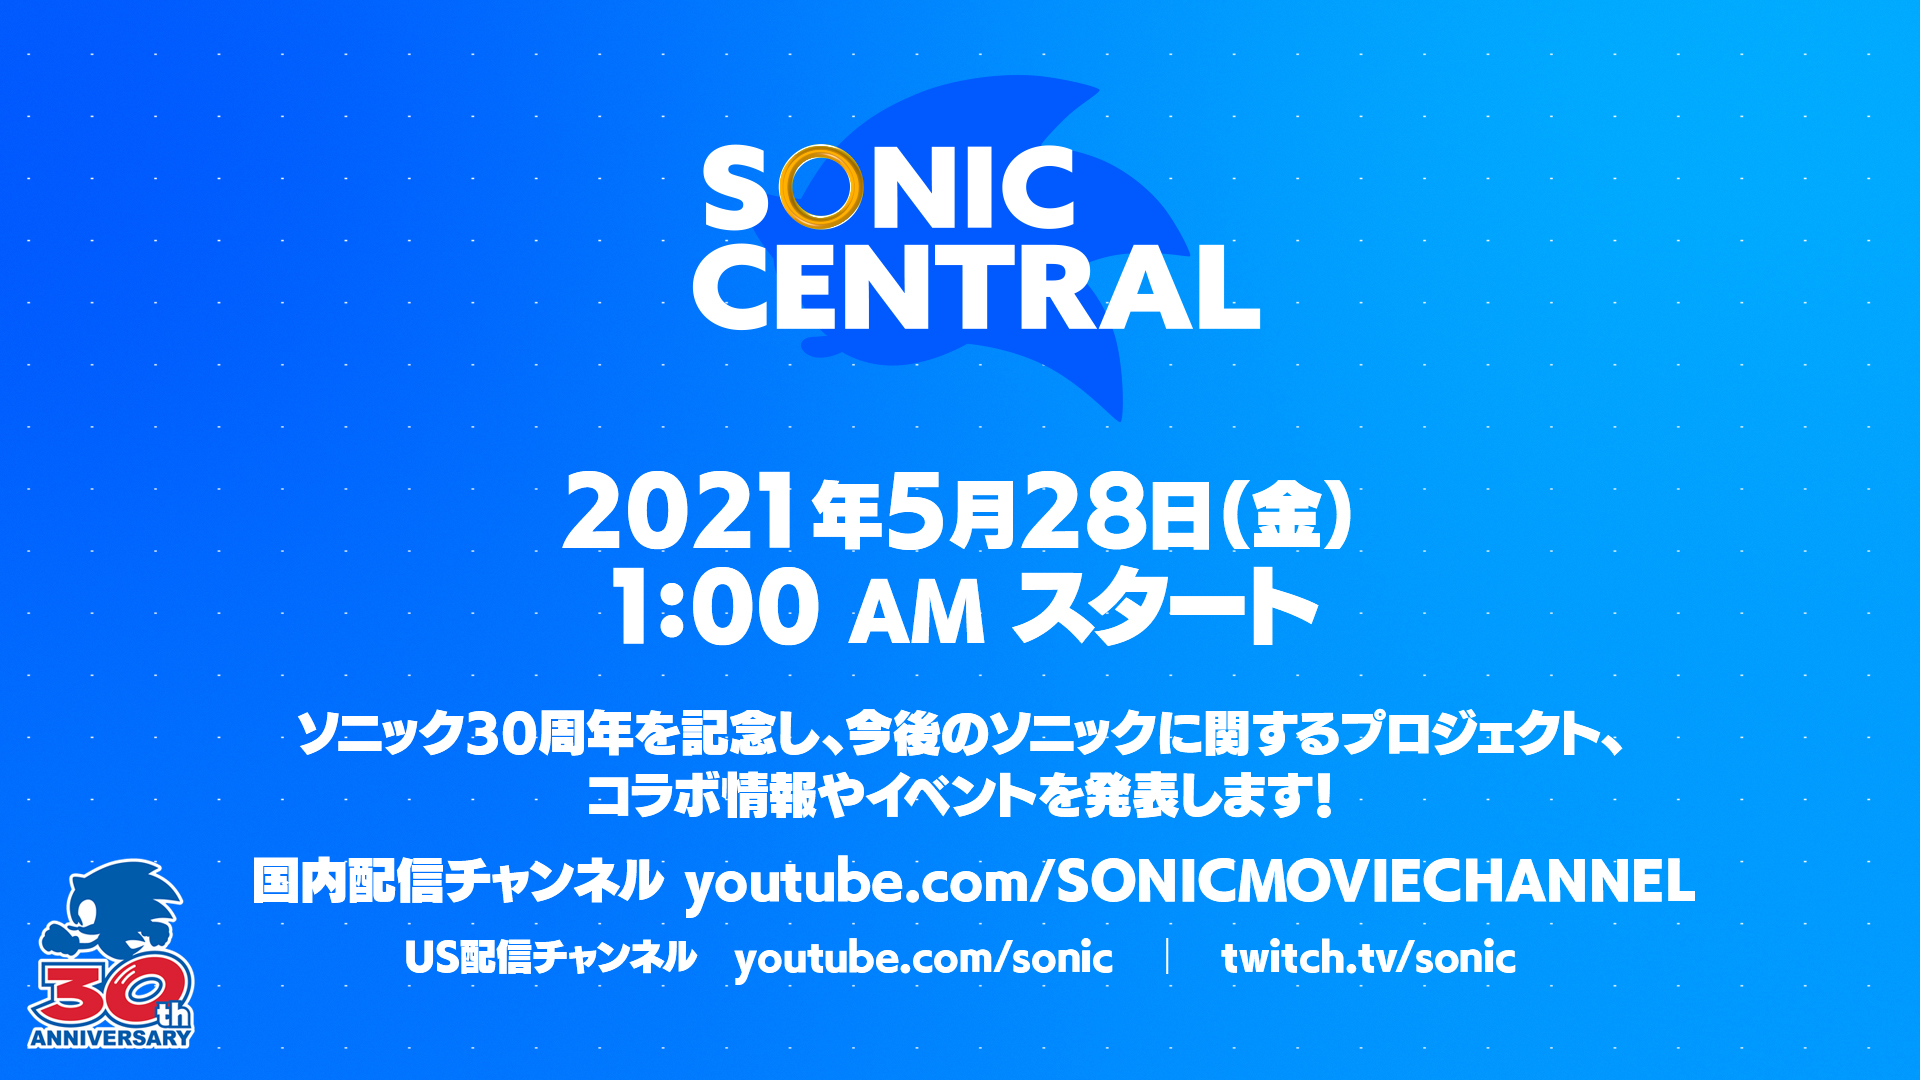 ソニック シリーズの今後の展望が明らかに 配信番組 Sonic Central が5月28日1時より放送 Game Watch